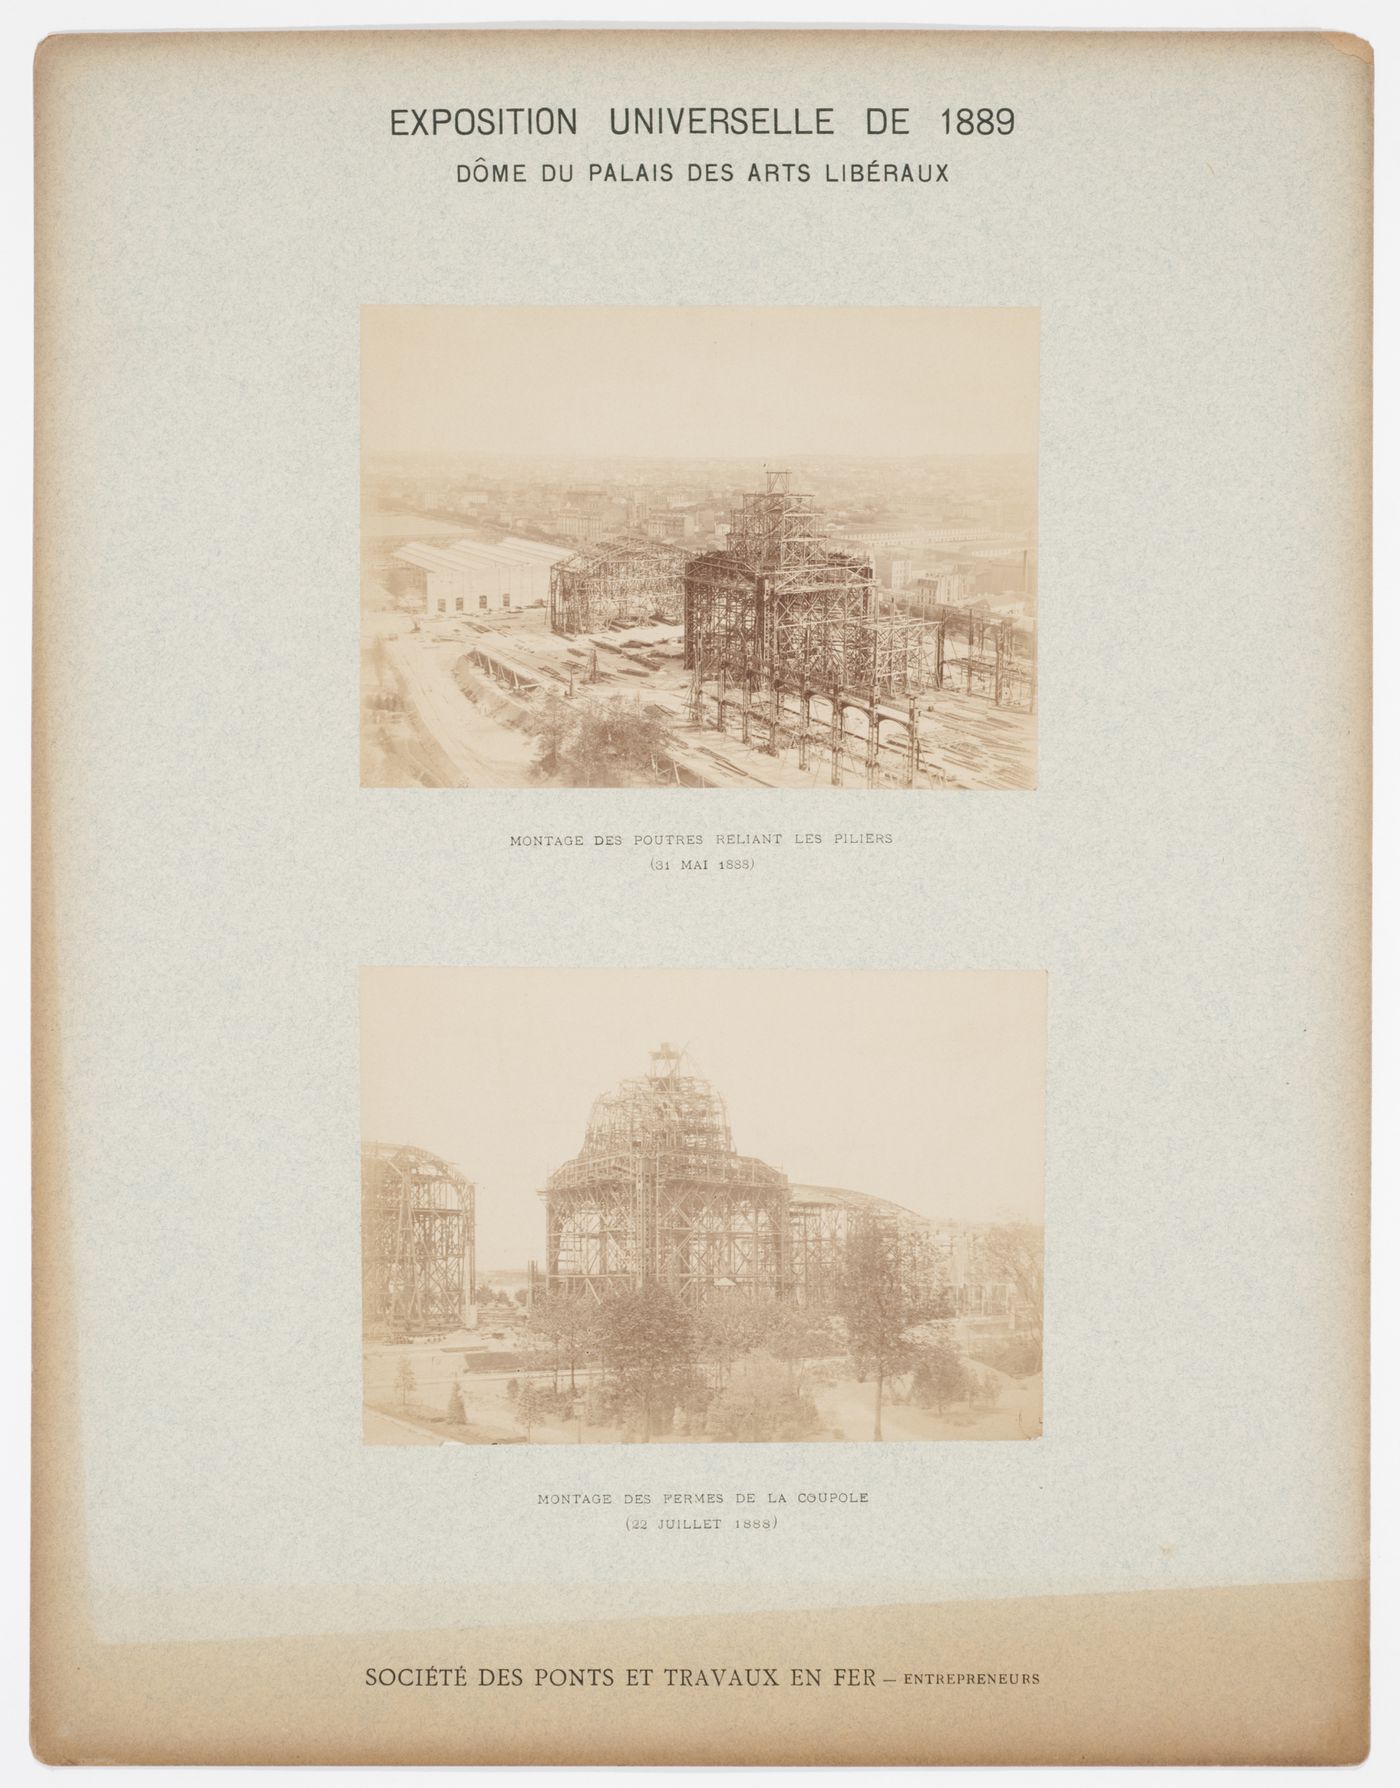 Views of construction of the Dome du Palais des Arts Liberaux, Exposition Universelle de 1889, Paris, France